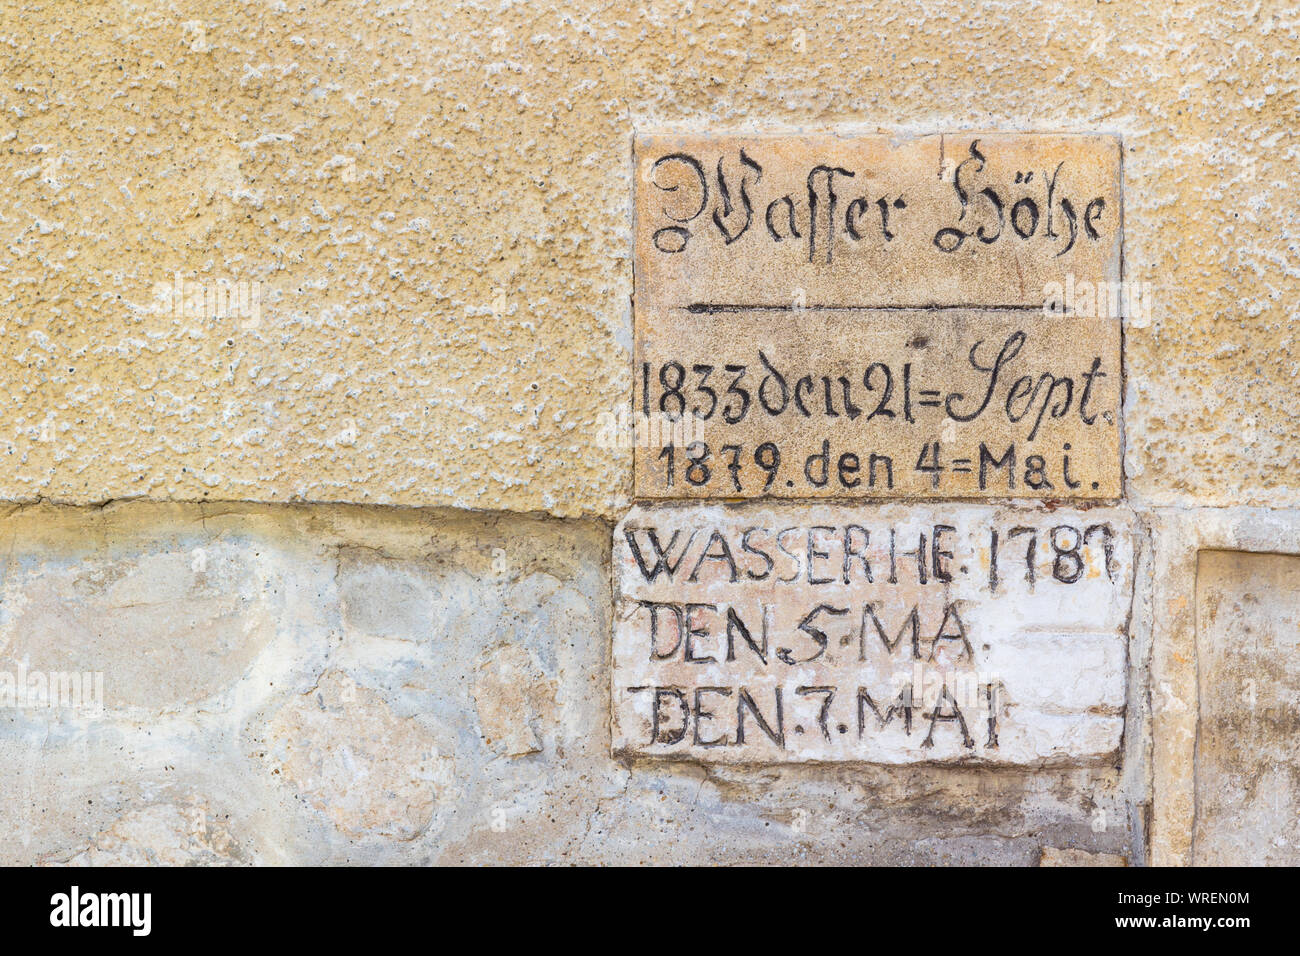 18e et 19e siècle au niveau de la hauteur d'inondation marqueurs sur vieux mur à Sopron, Hongrie. Légende dit : Wasser höhe  = hauteur d'eau Banque D'Images